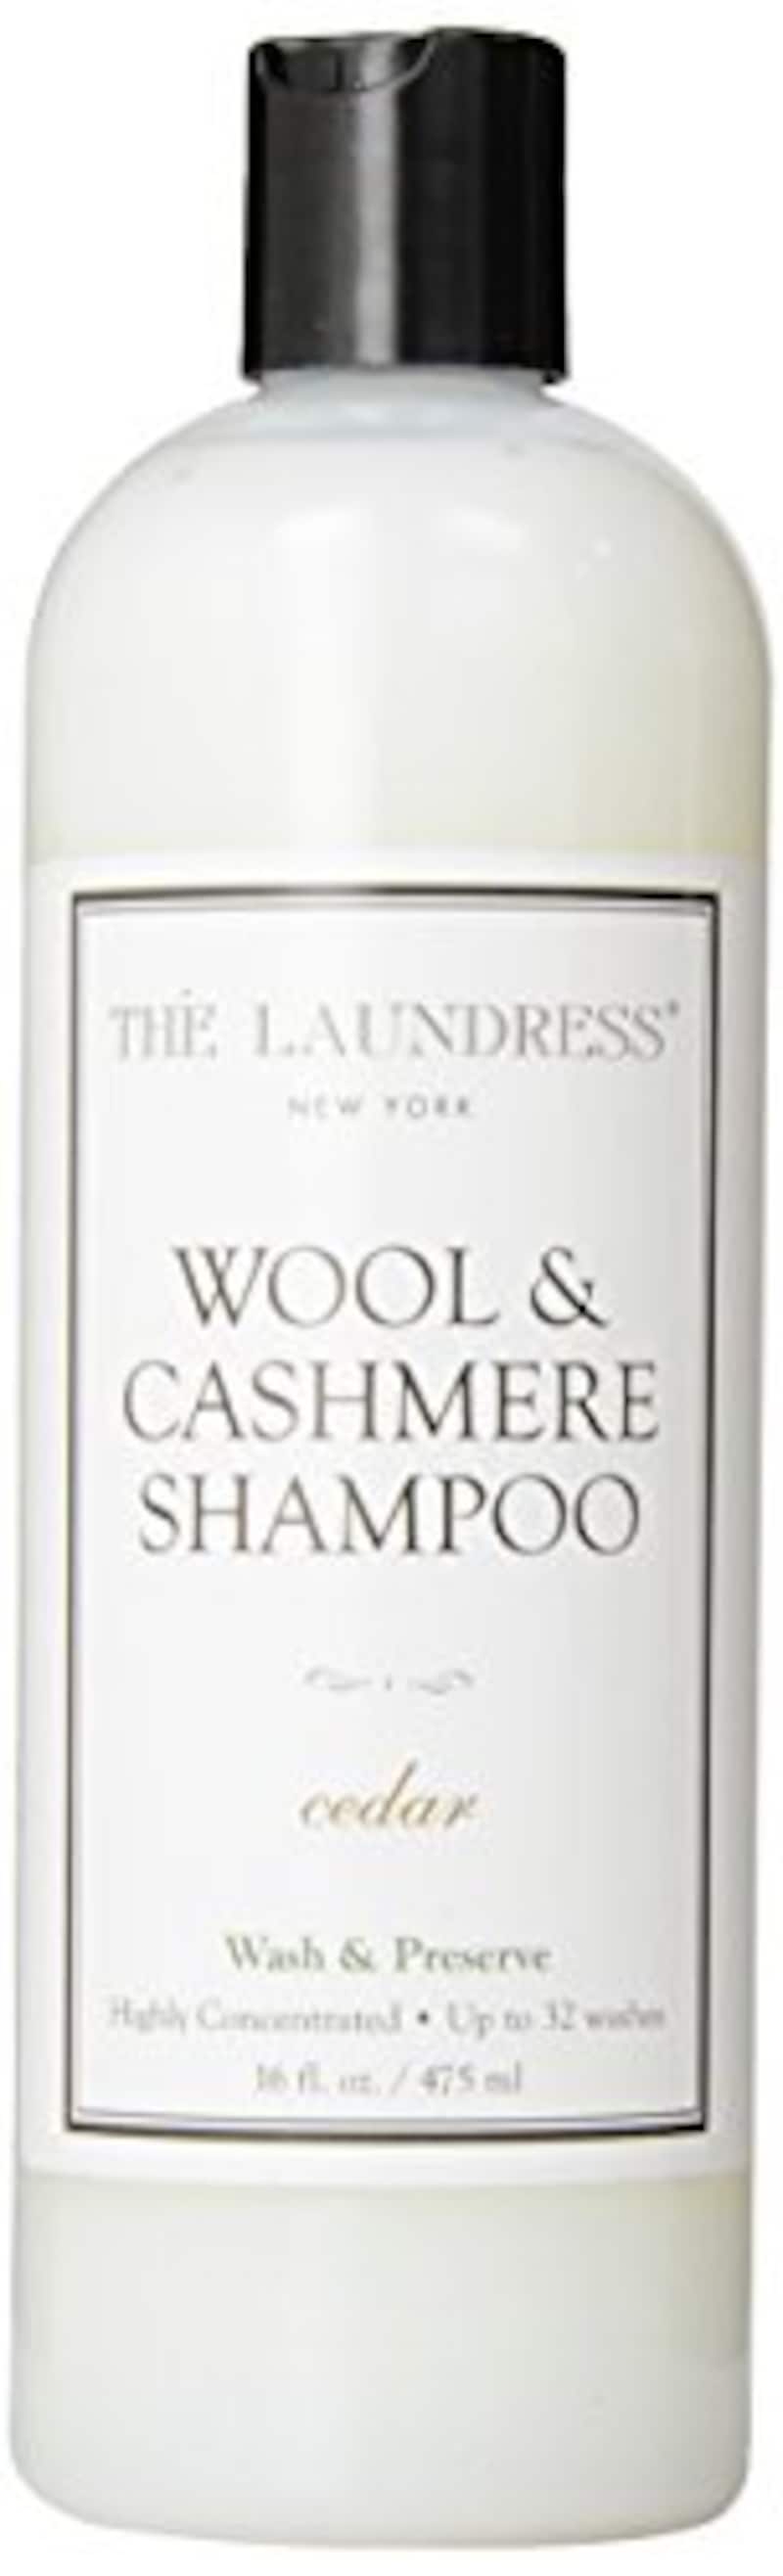 THE LAUNDRESS(ザ・ランドレス)  ウールカシミアシャンプー cedarの香り475ml